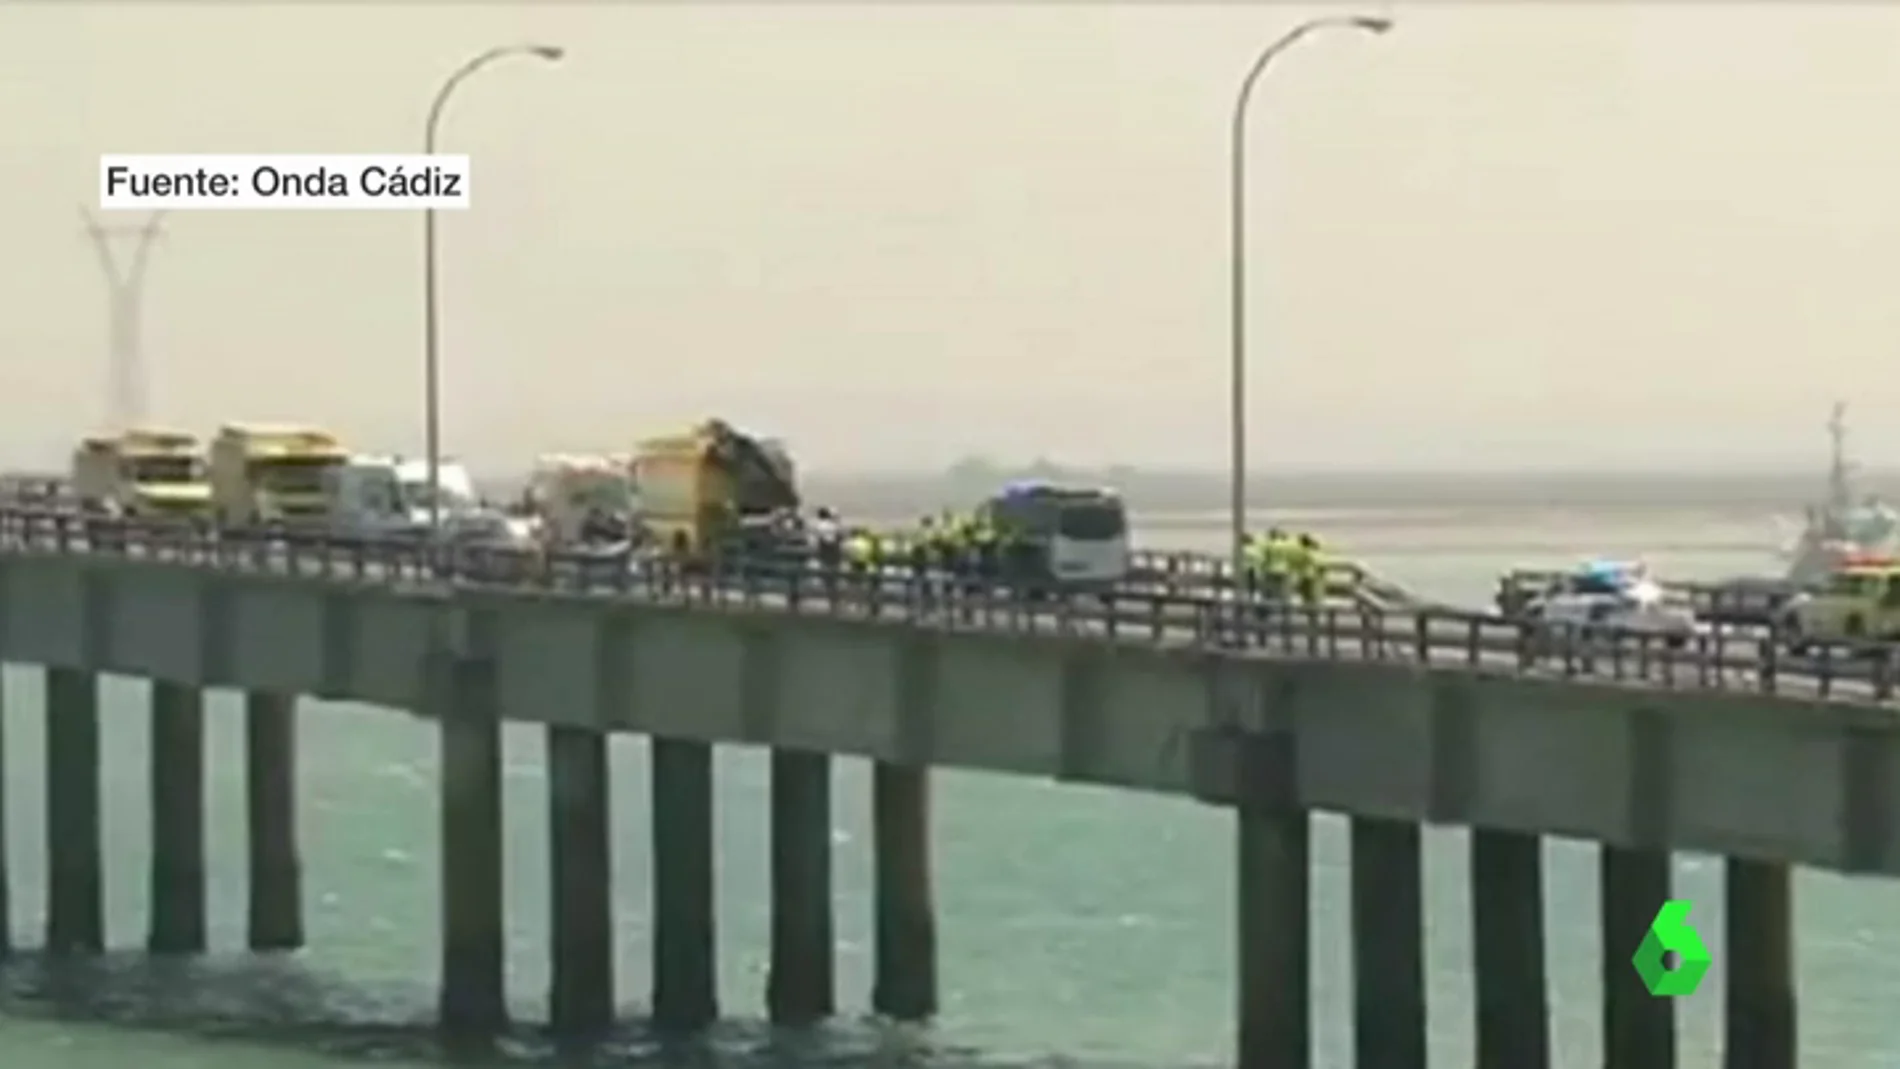 Los agentes rescatando al conductor en el Puente Carranza de Cádiz